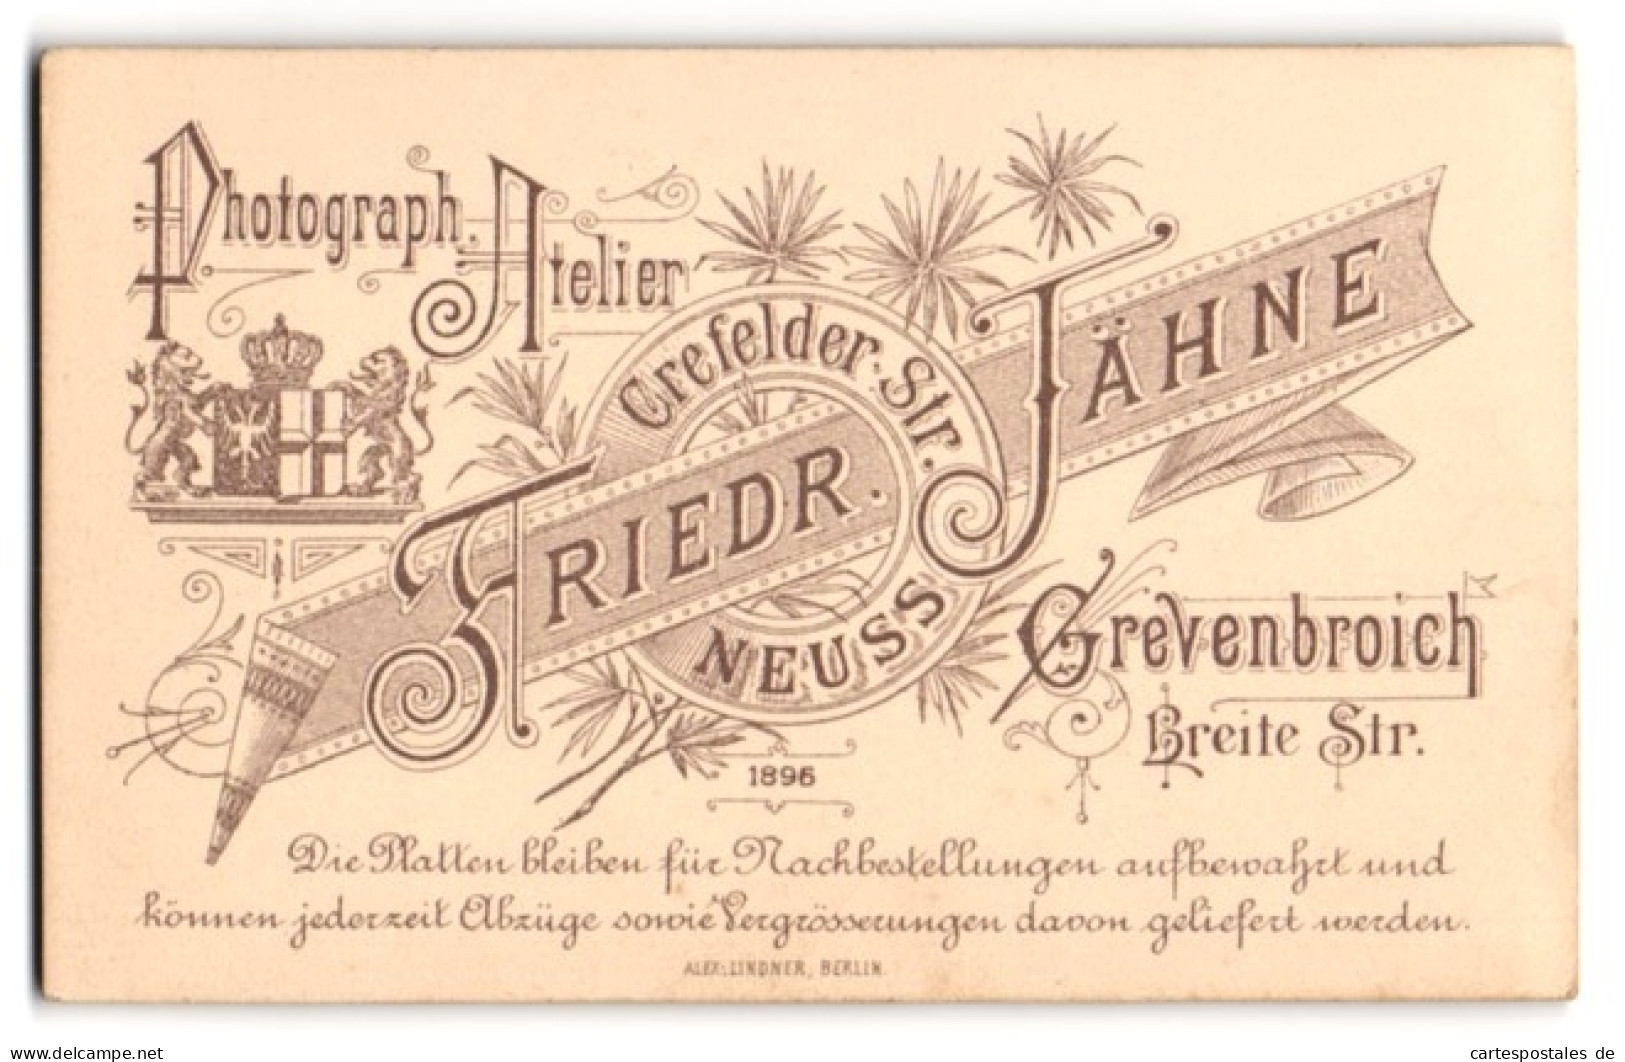 Fotografie Friedr. Jähne, Grevenbroich, Breite Str., Königliches Wappen Nebst Anschriften Der Ateliers  - Anonyme Personen